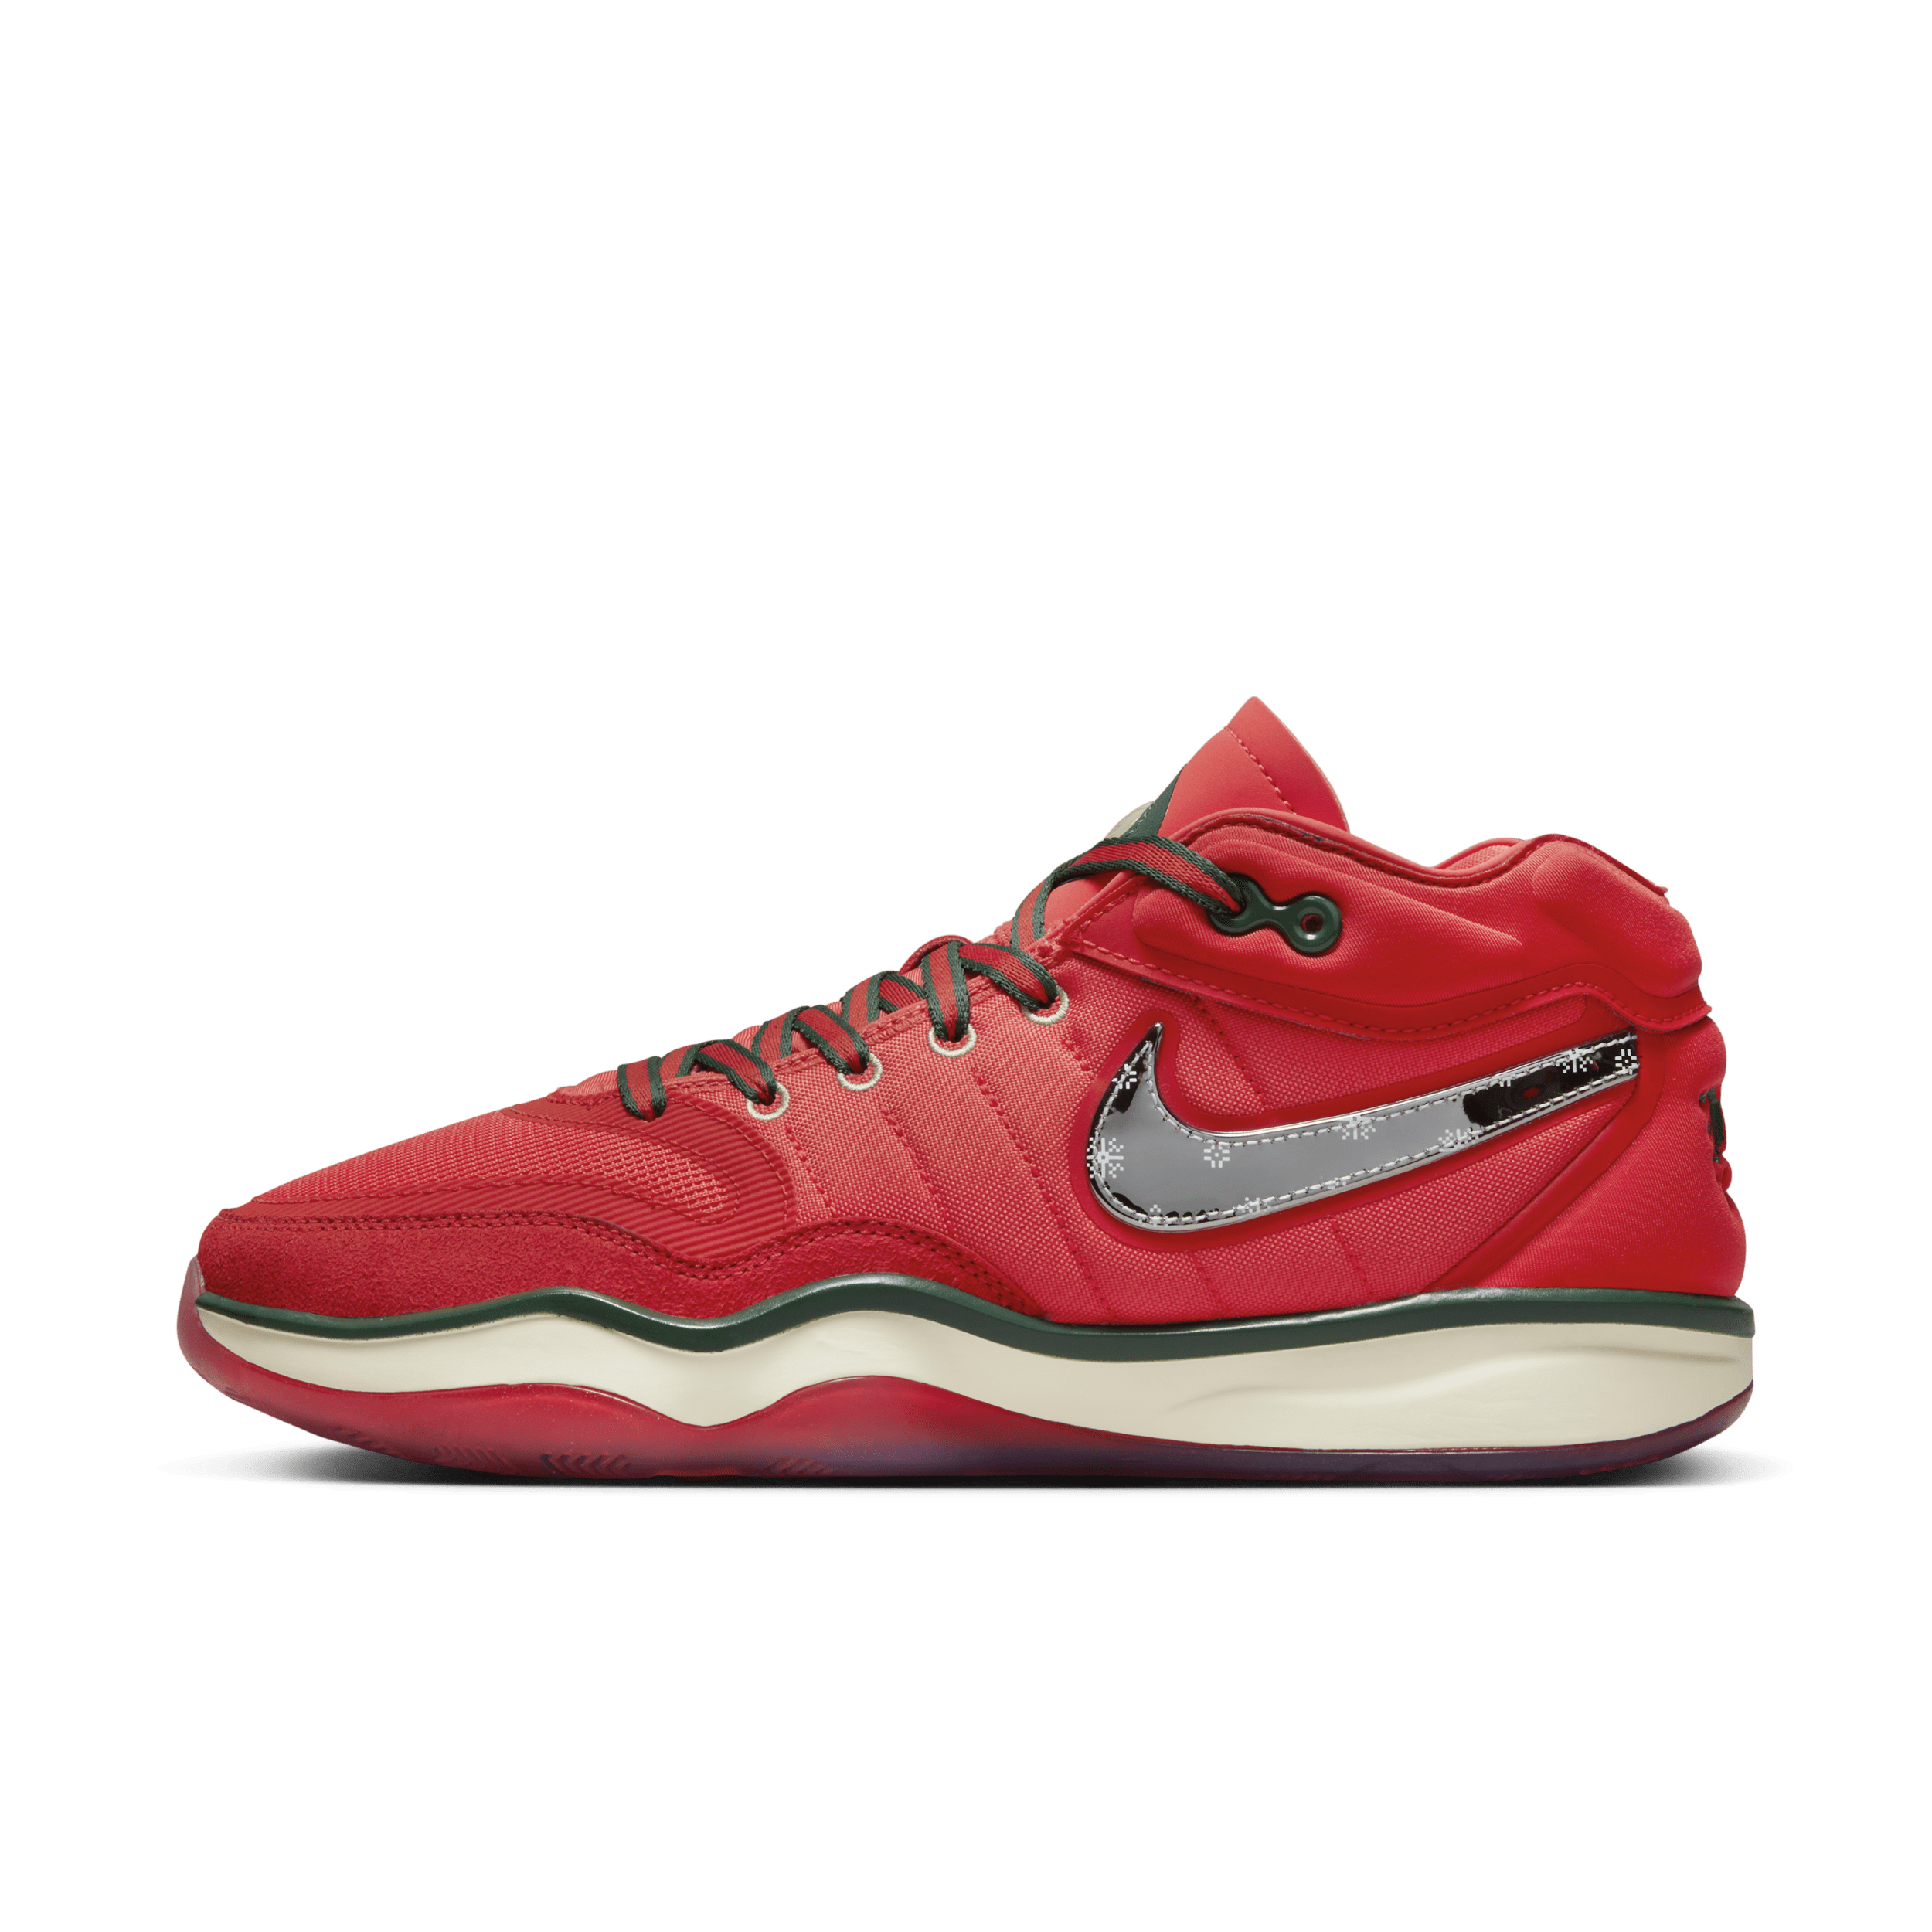 Nike G.T. Hustle 2 basketbalschoenen - Rood